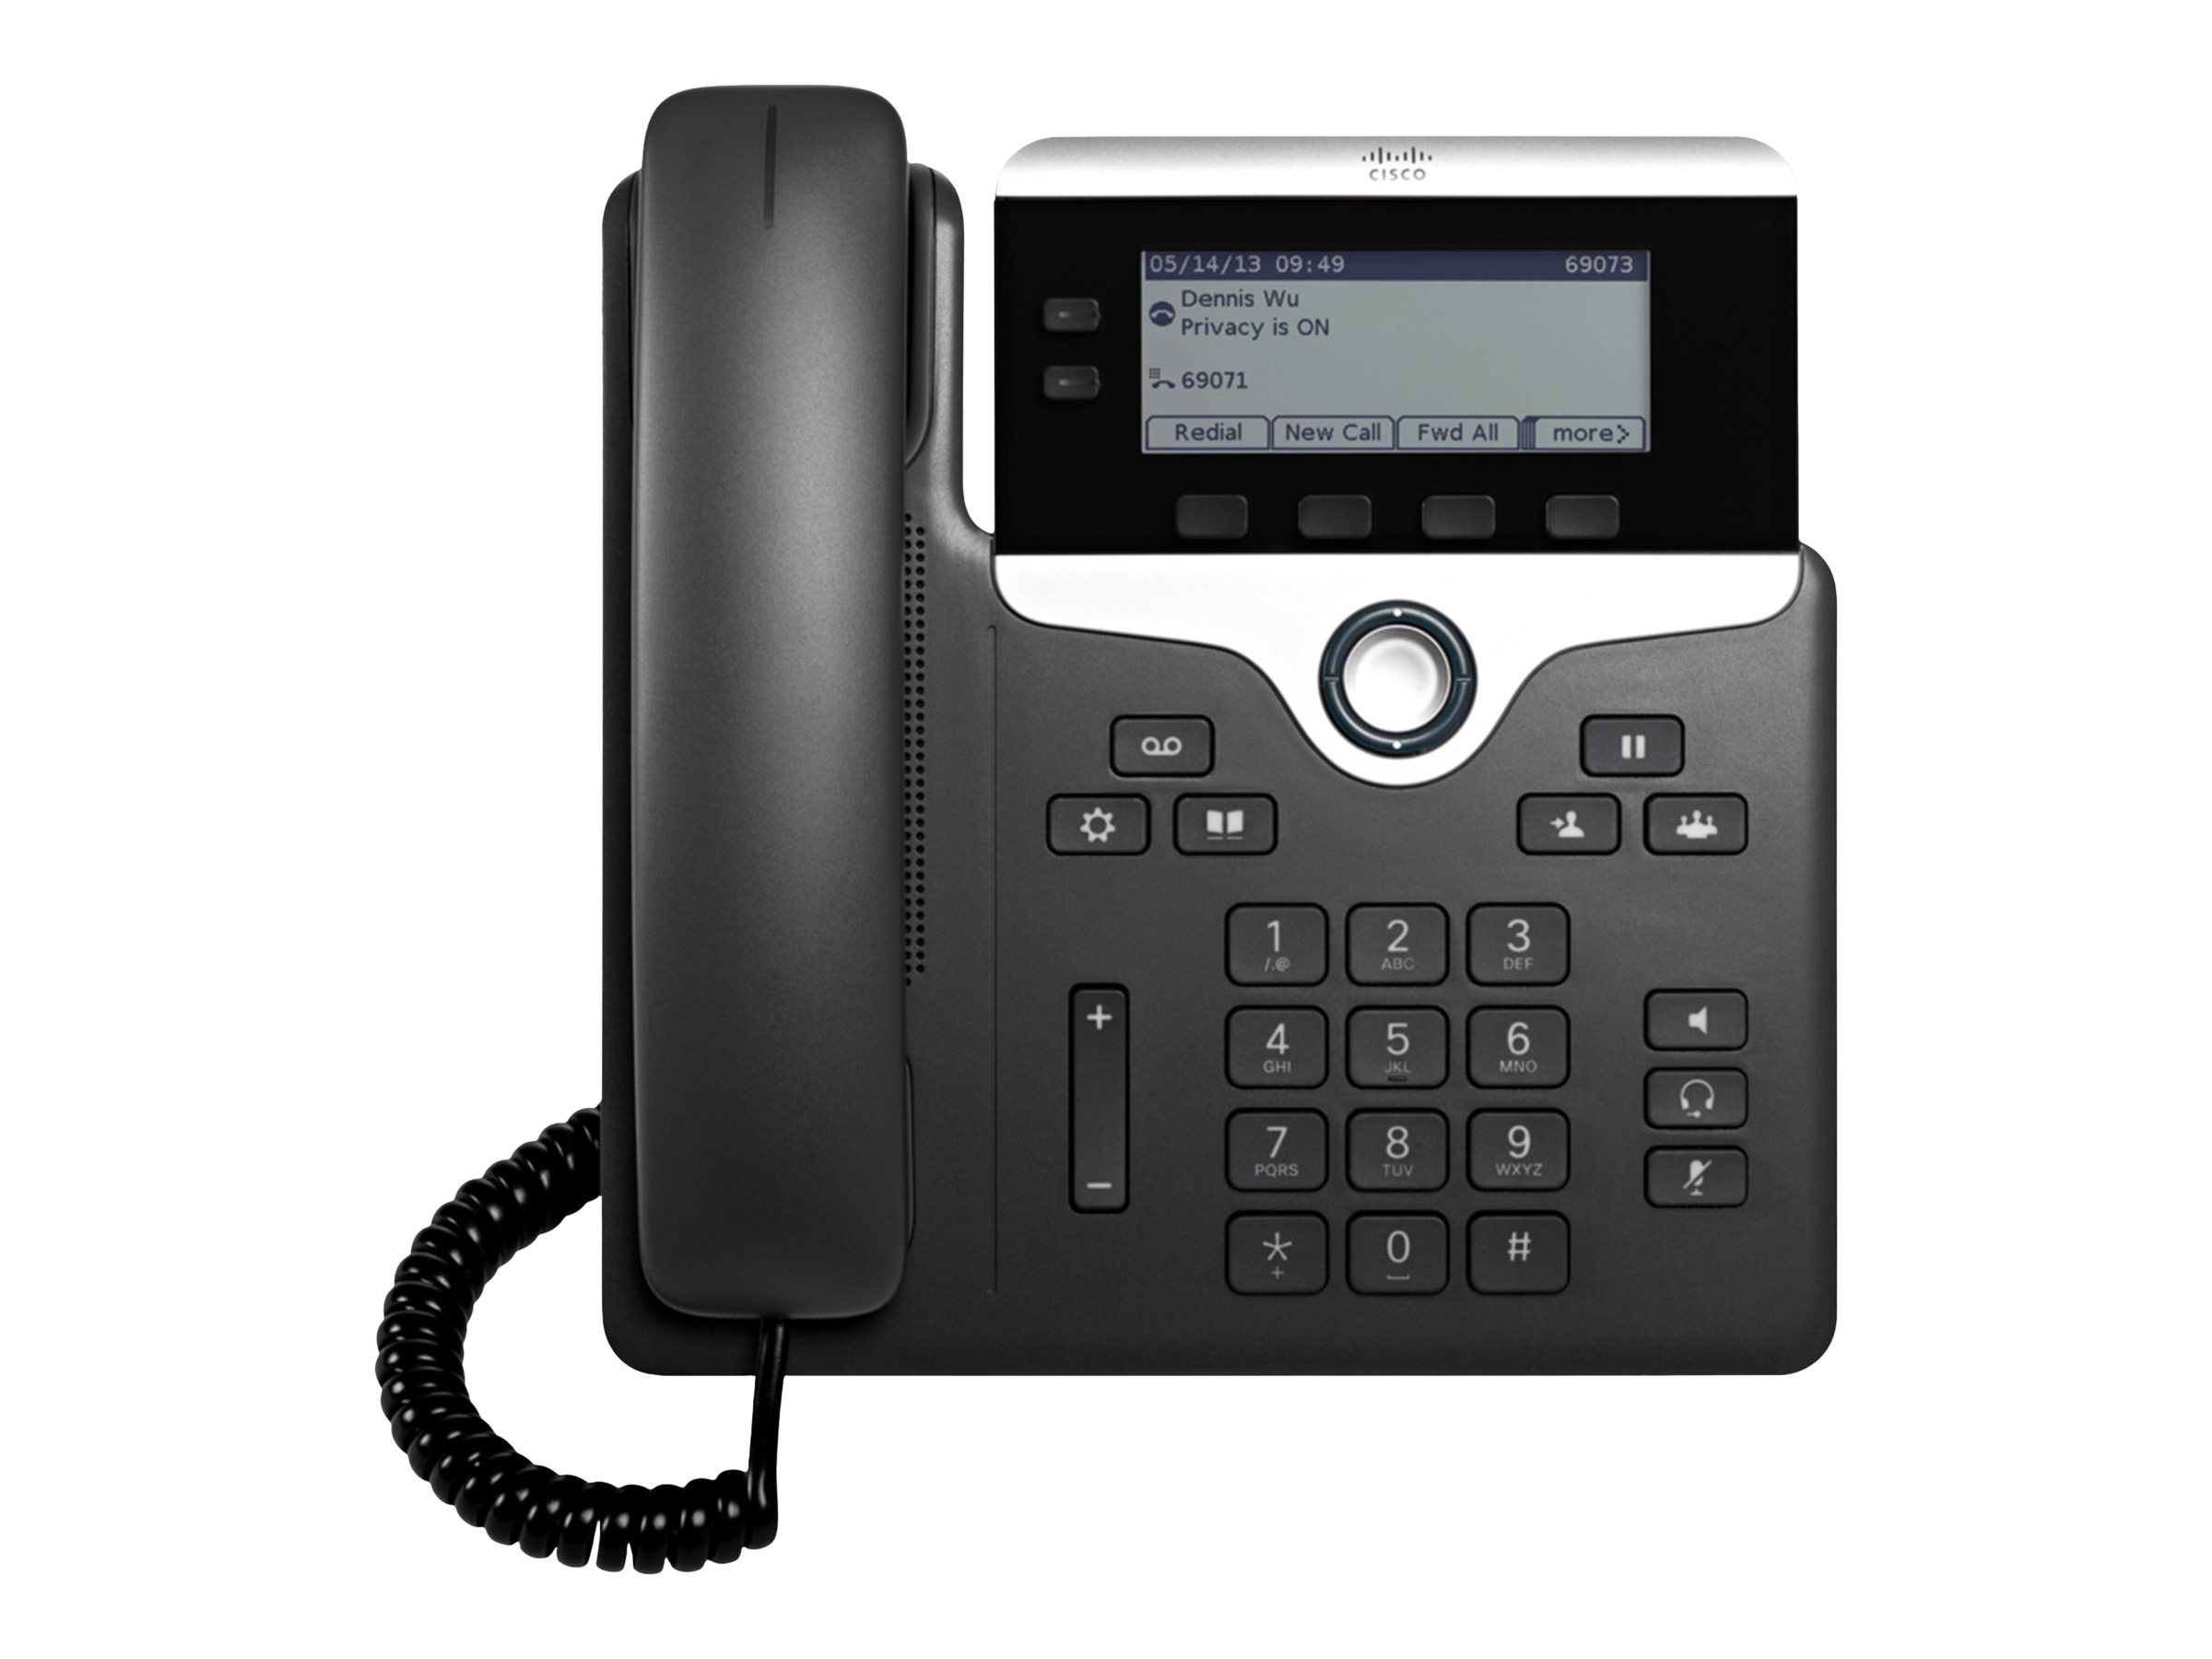 Cisco IP Phone 7821 - VoIP-Telefon - SIP, SRTP - 2 Leitungen